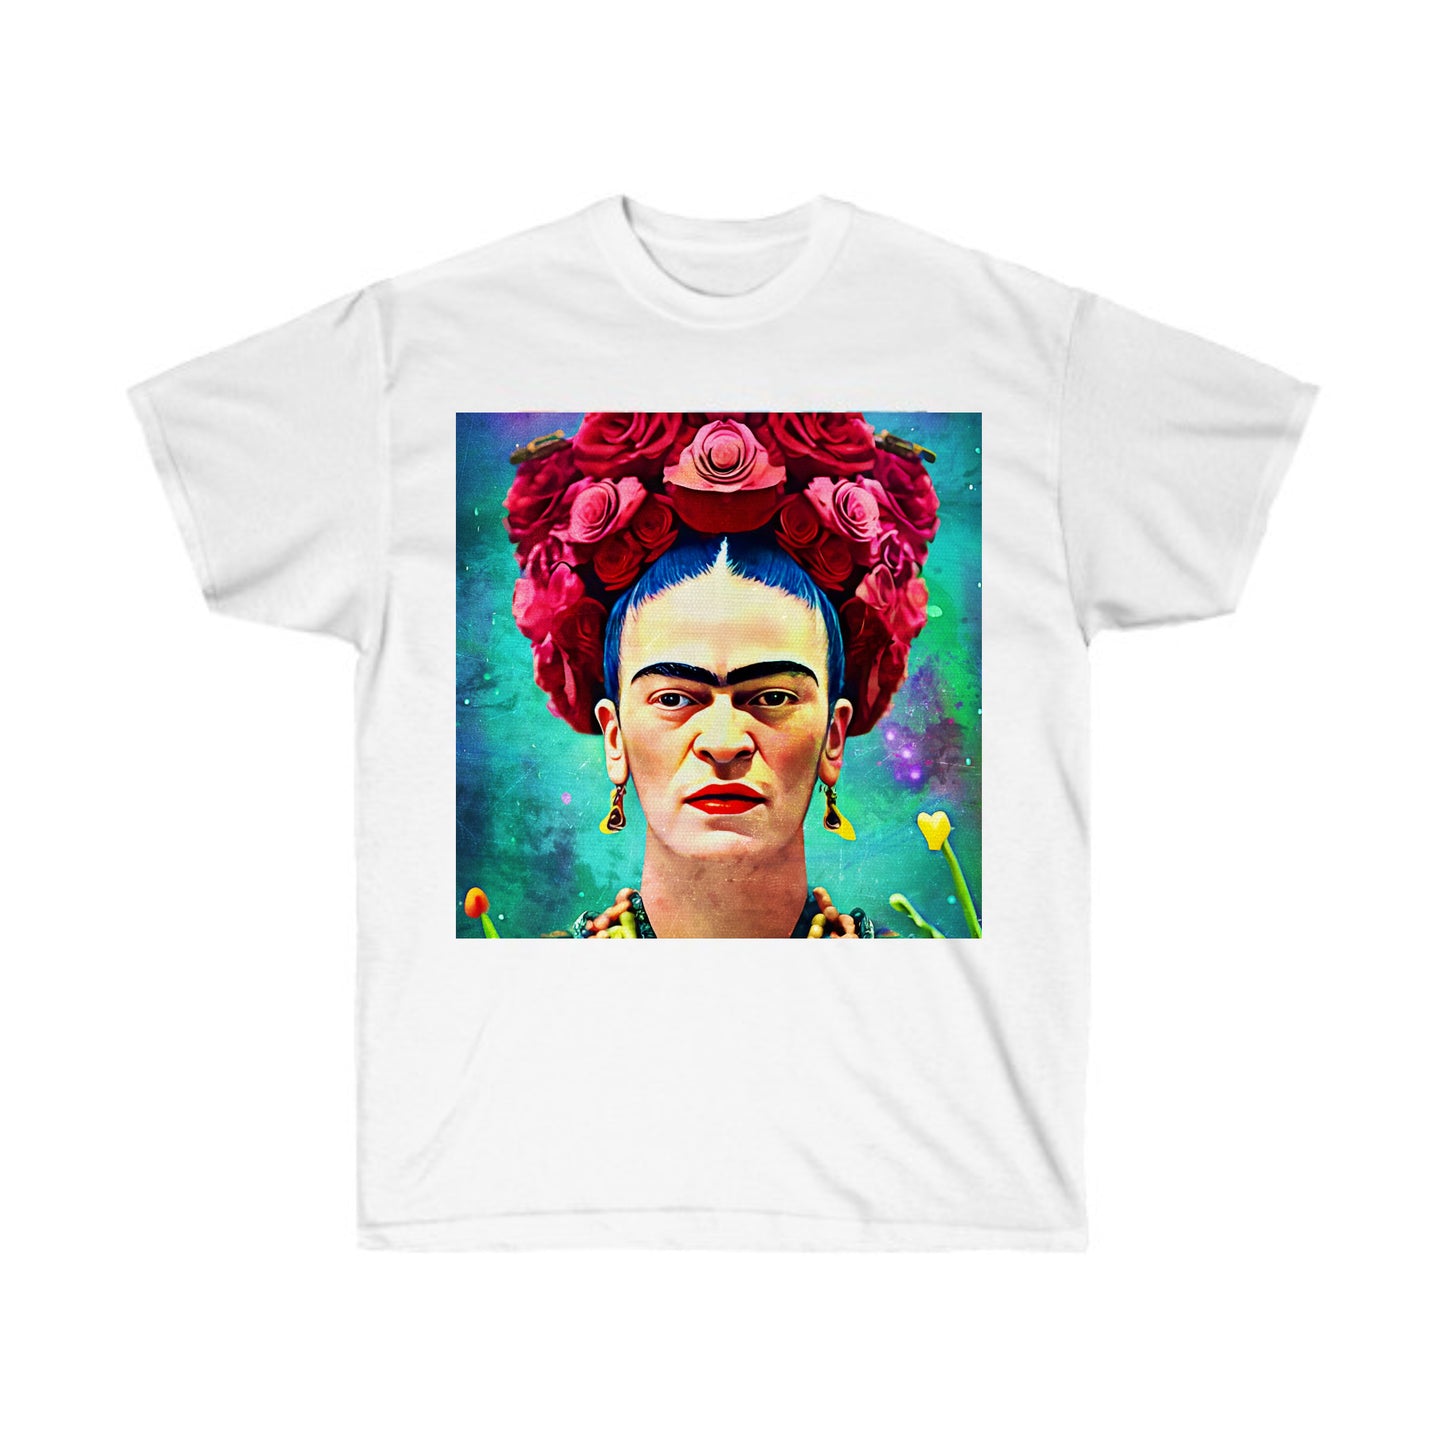 White Unisex T-Shirt - Customize w/ Any Art